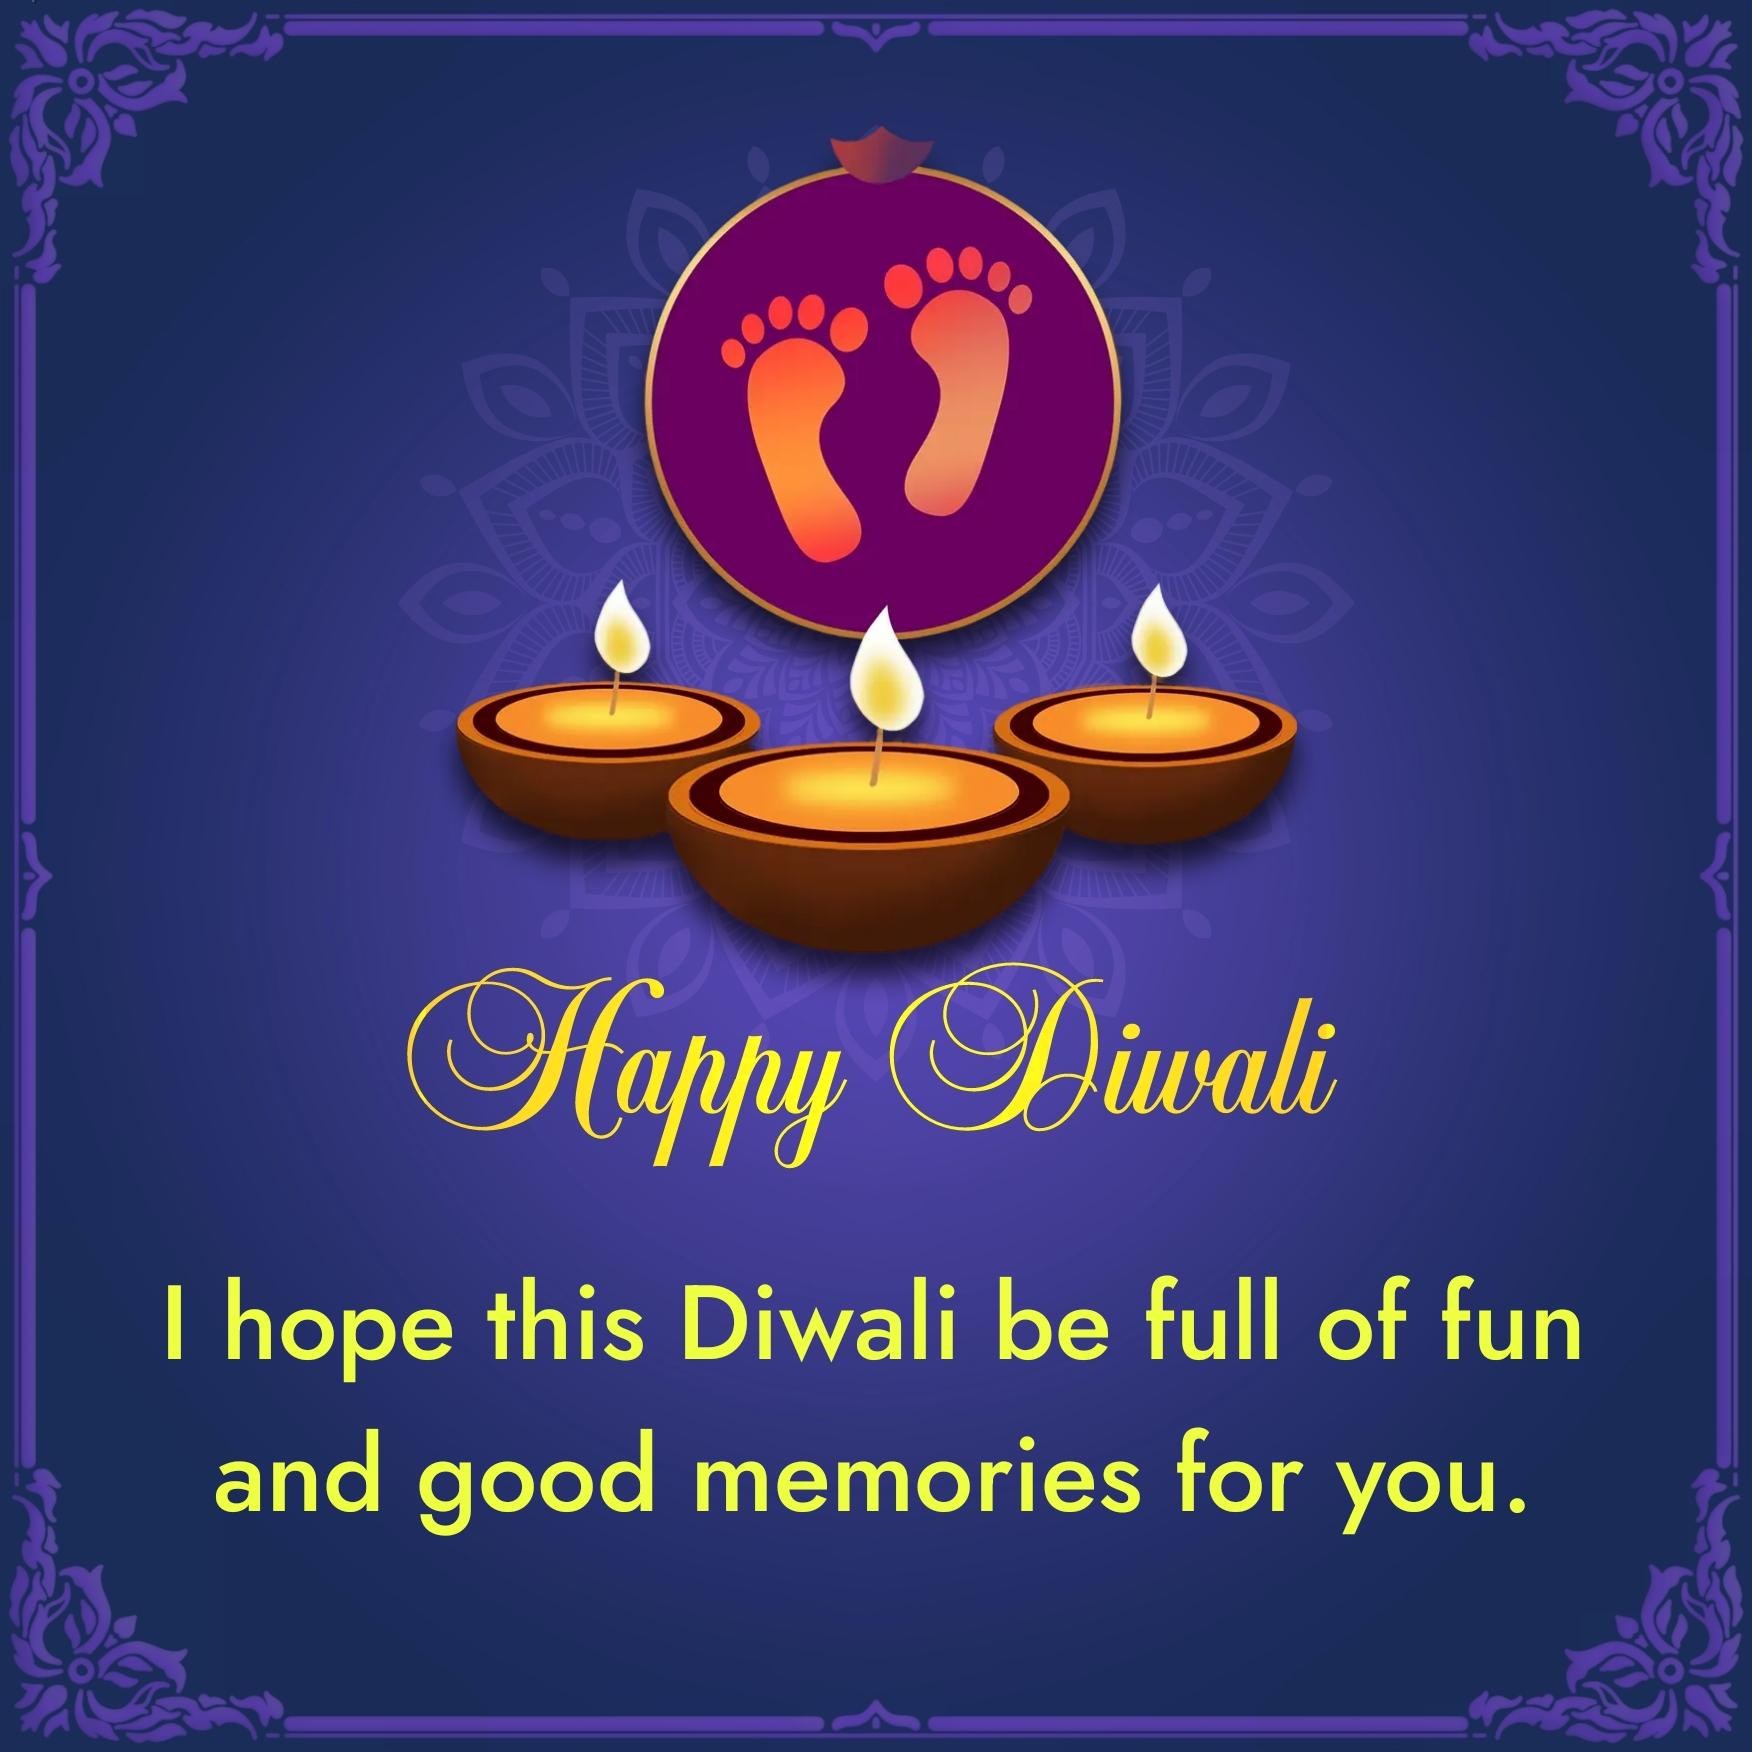 I hope this Diwali be full of fun and good memories